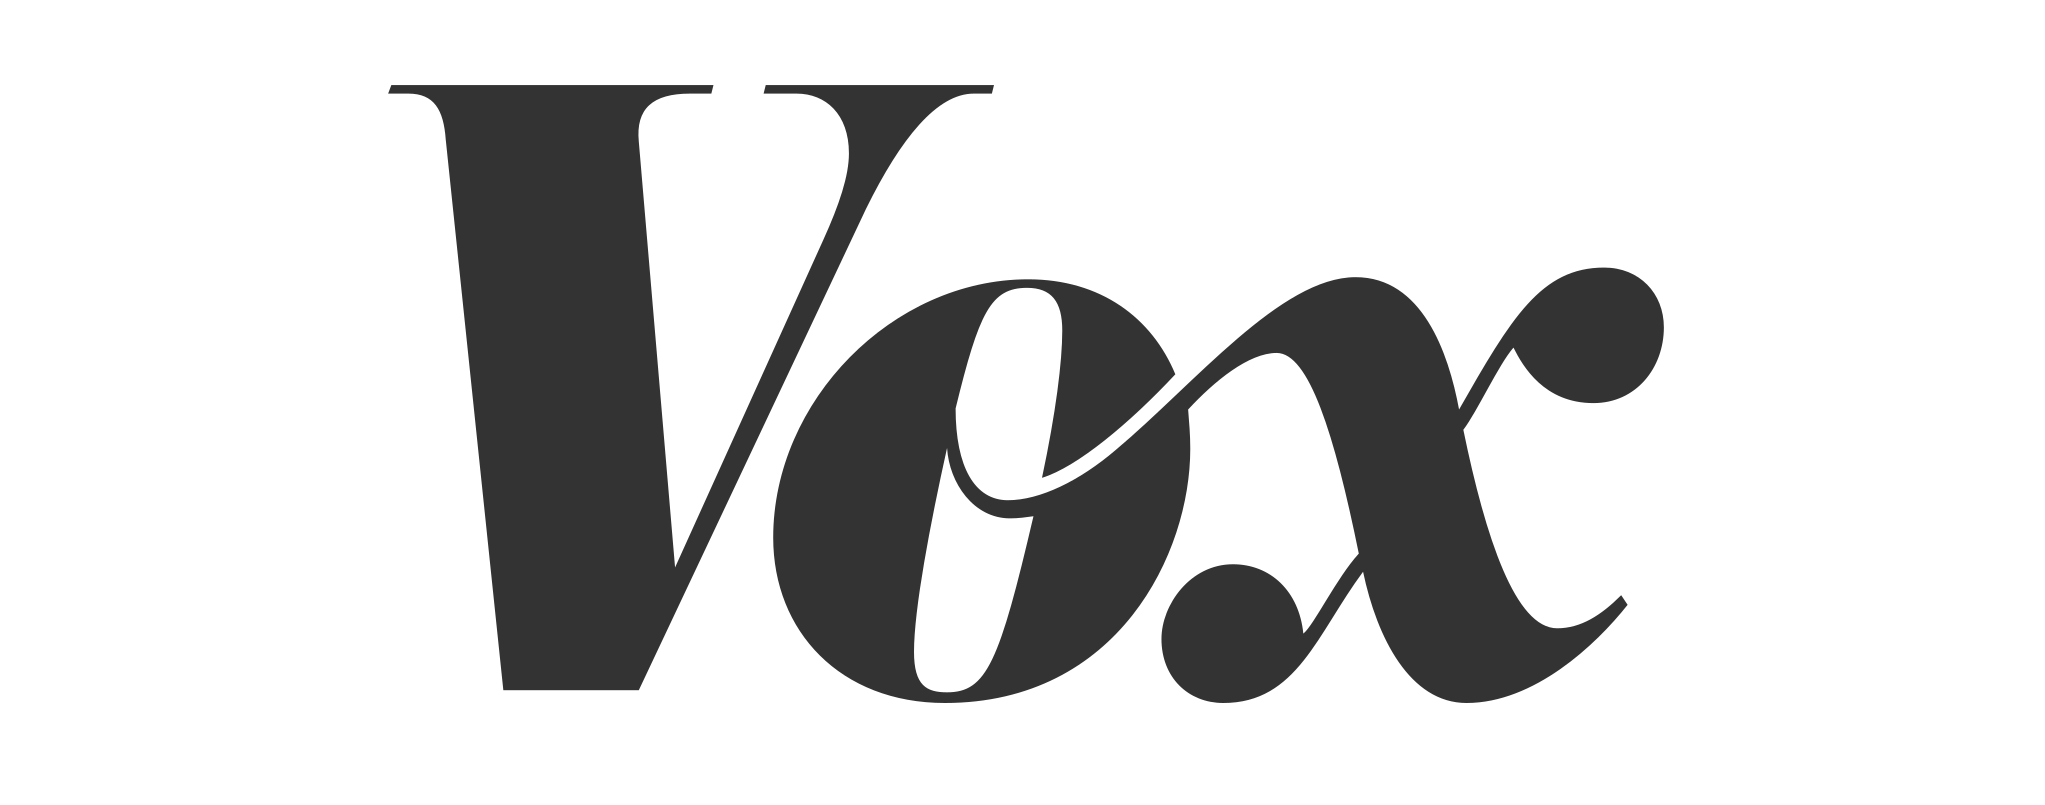 1280px-Vox_logo.svg copy.png